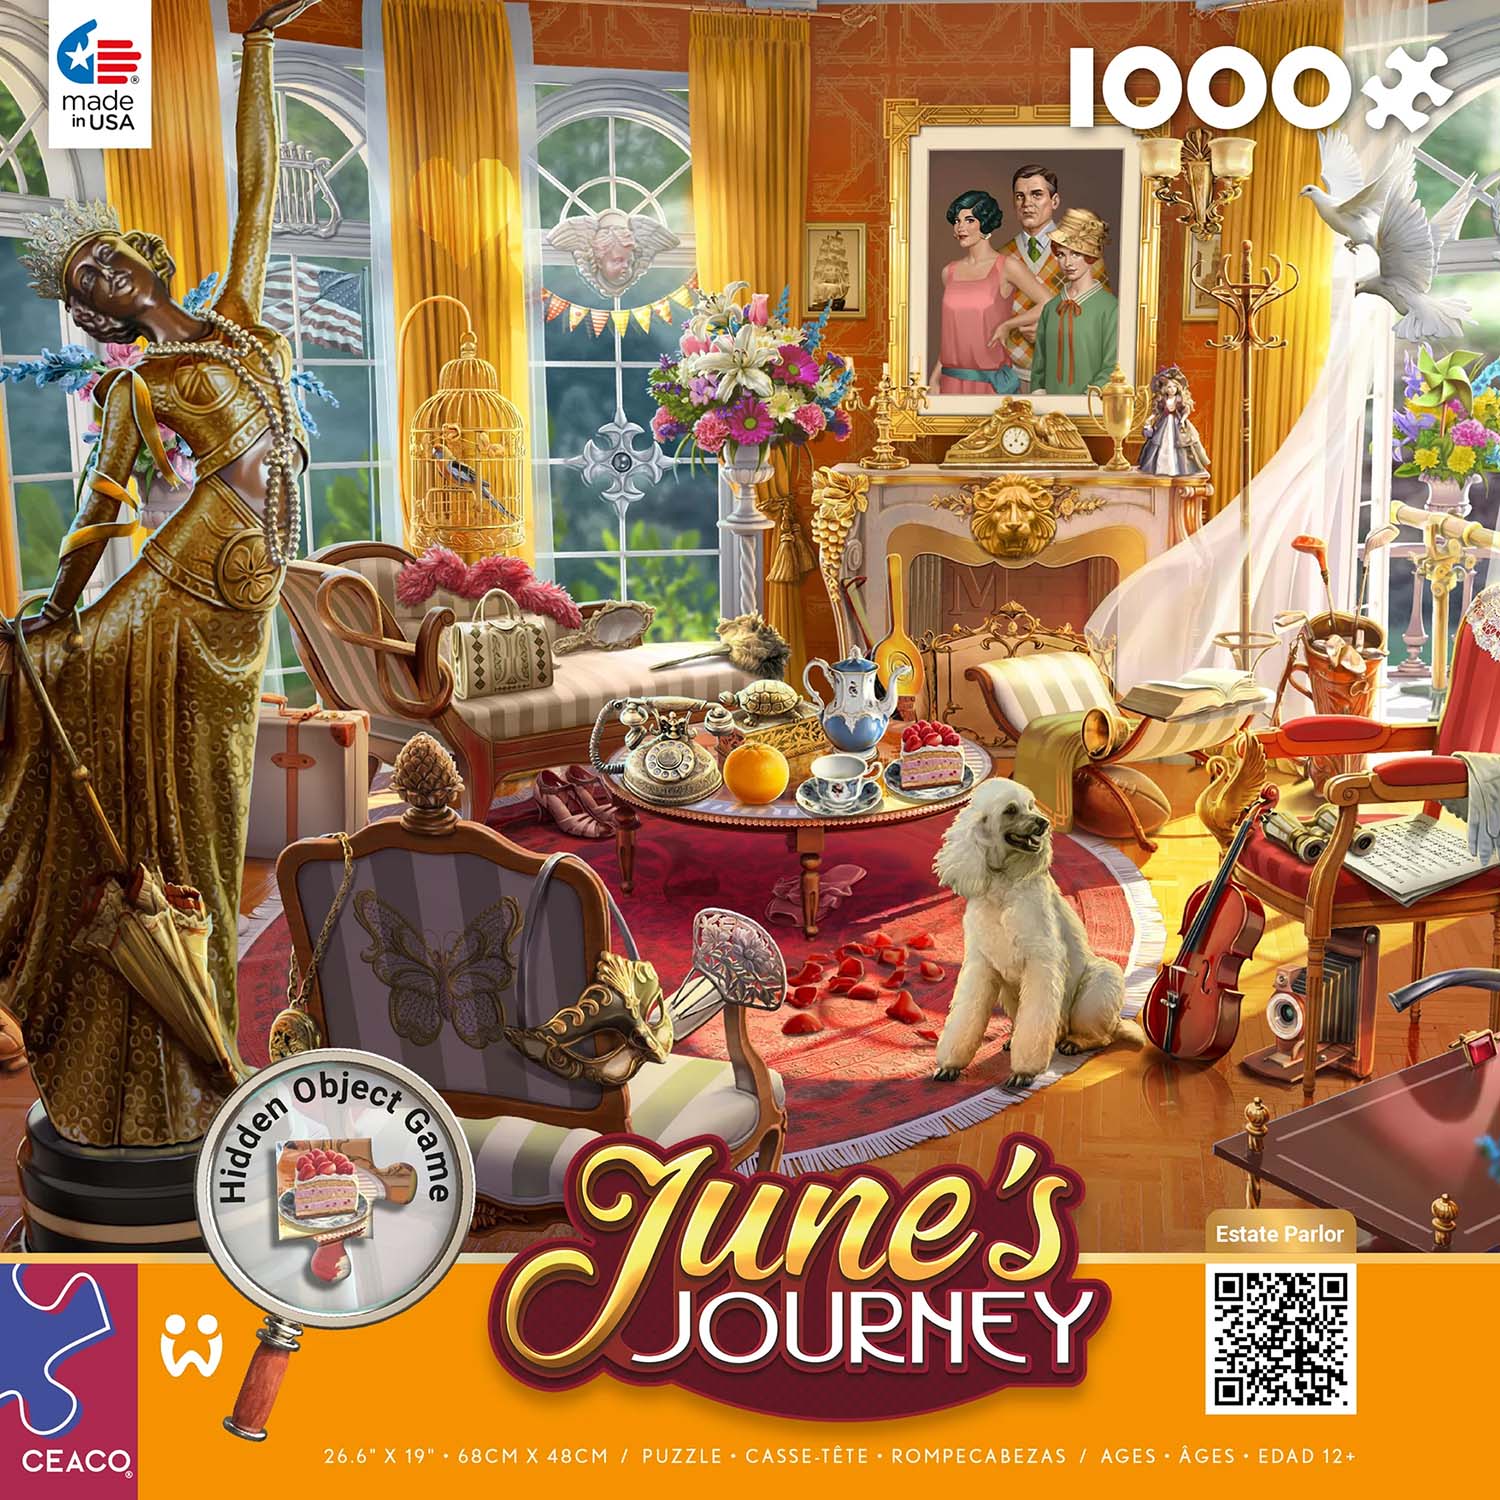 June's Journey - Estate Parlor